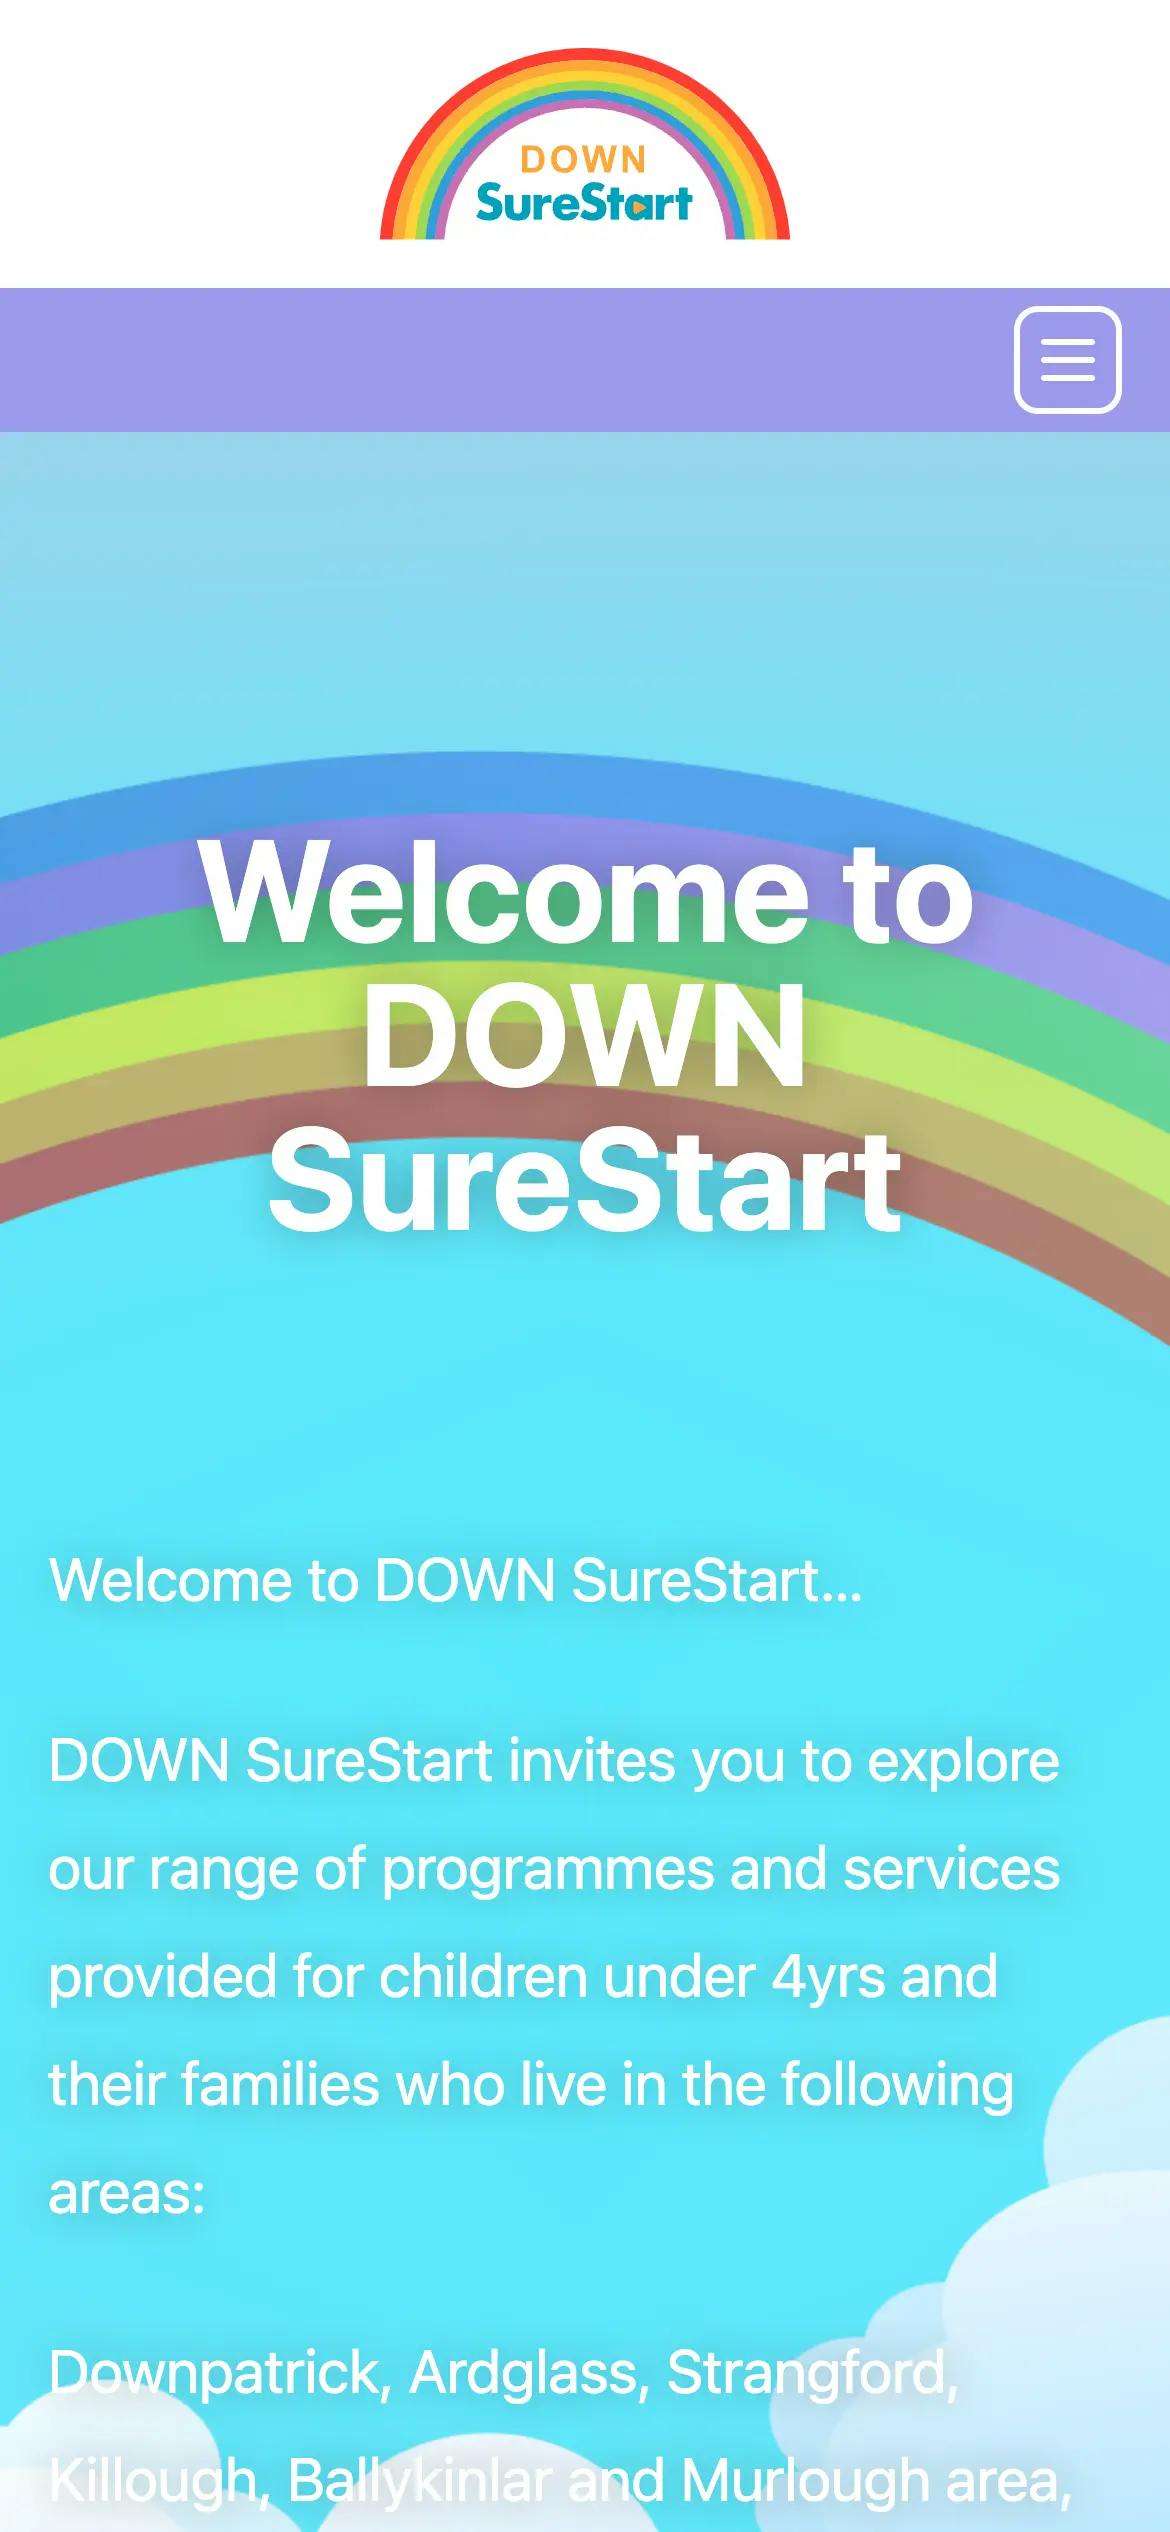 DOWN SureStart home page web design on mobile